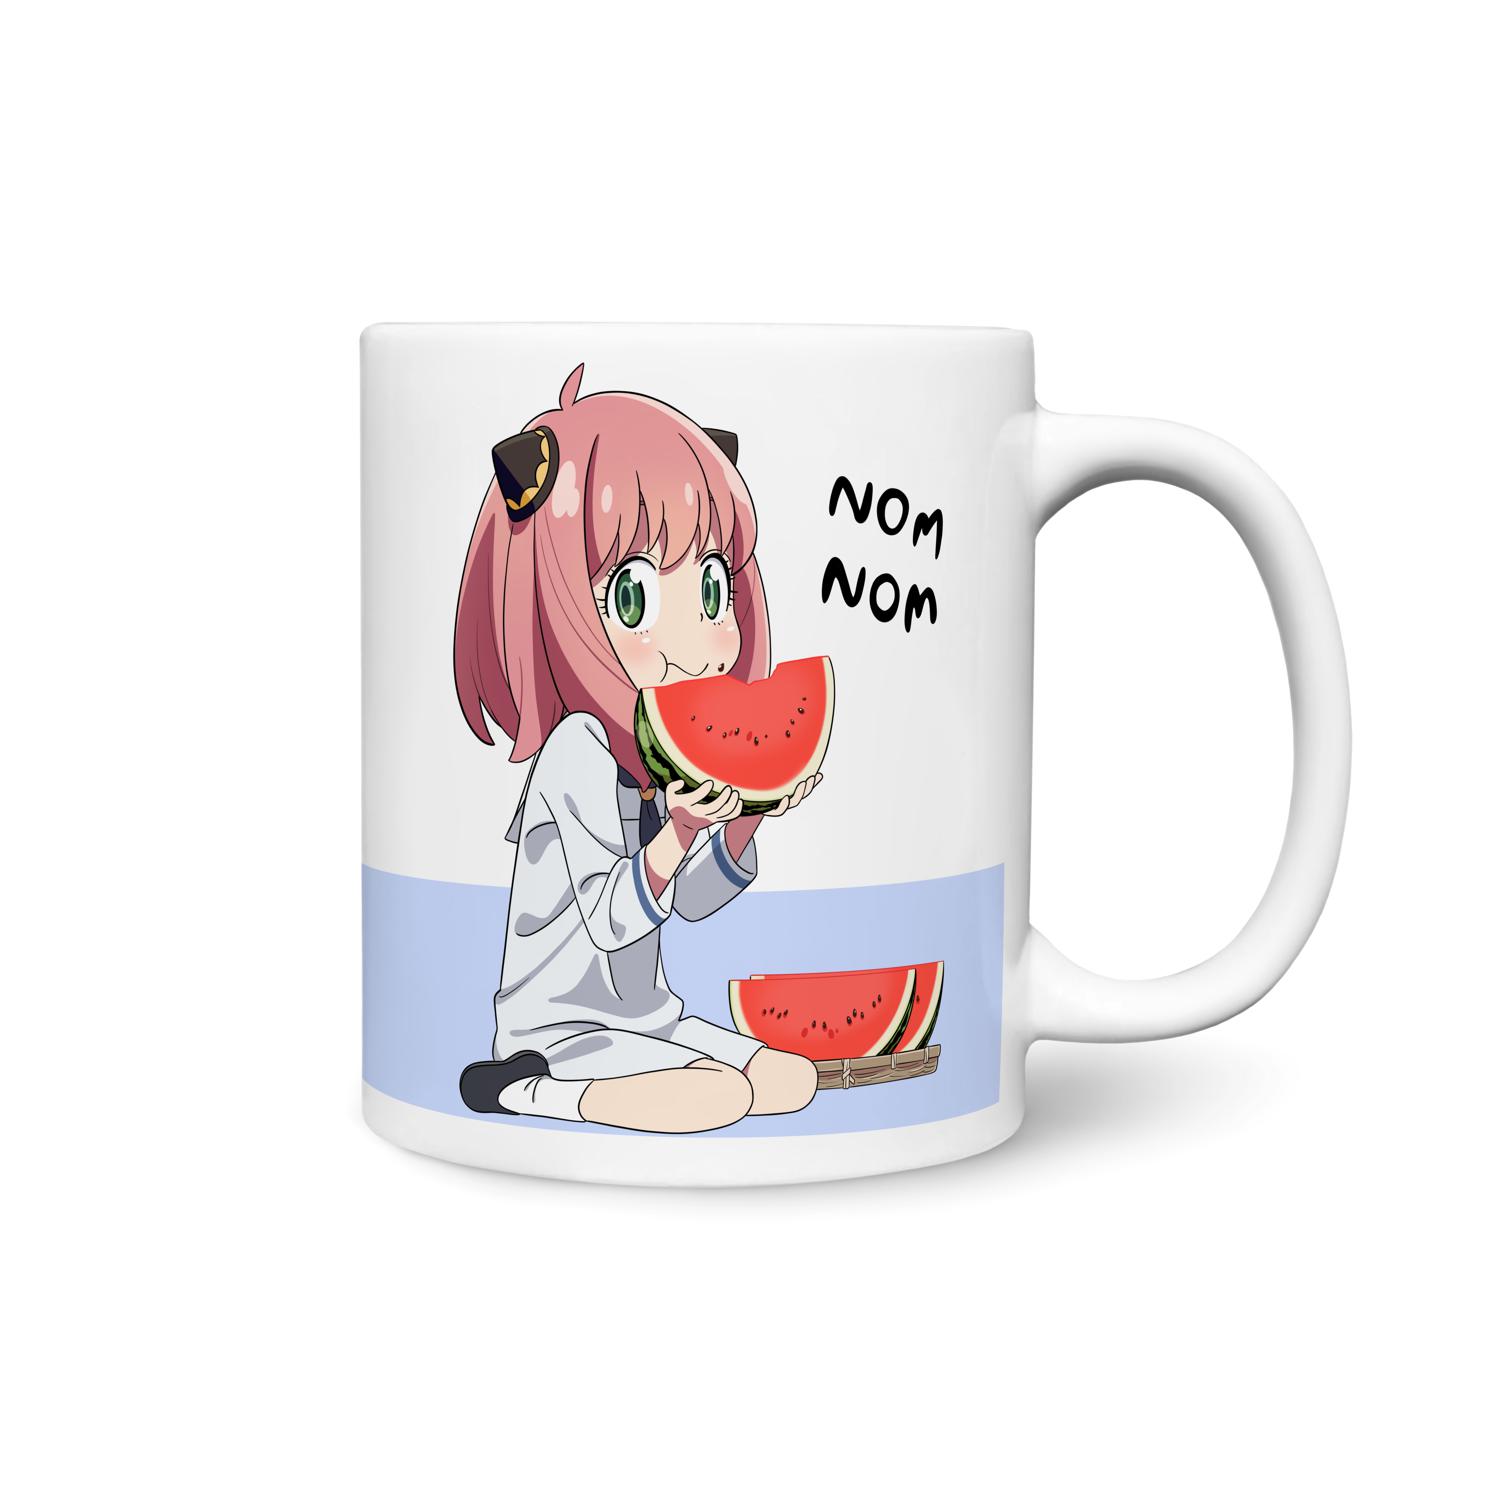 Anime Mug, Sensual Anime face, Yaranaika Meme Mug, Meme Coff - Inspire  Uplift